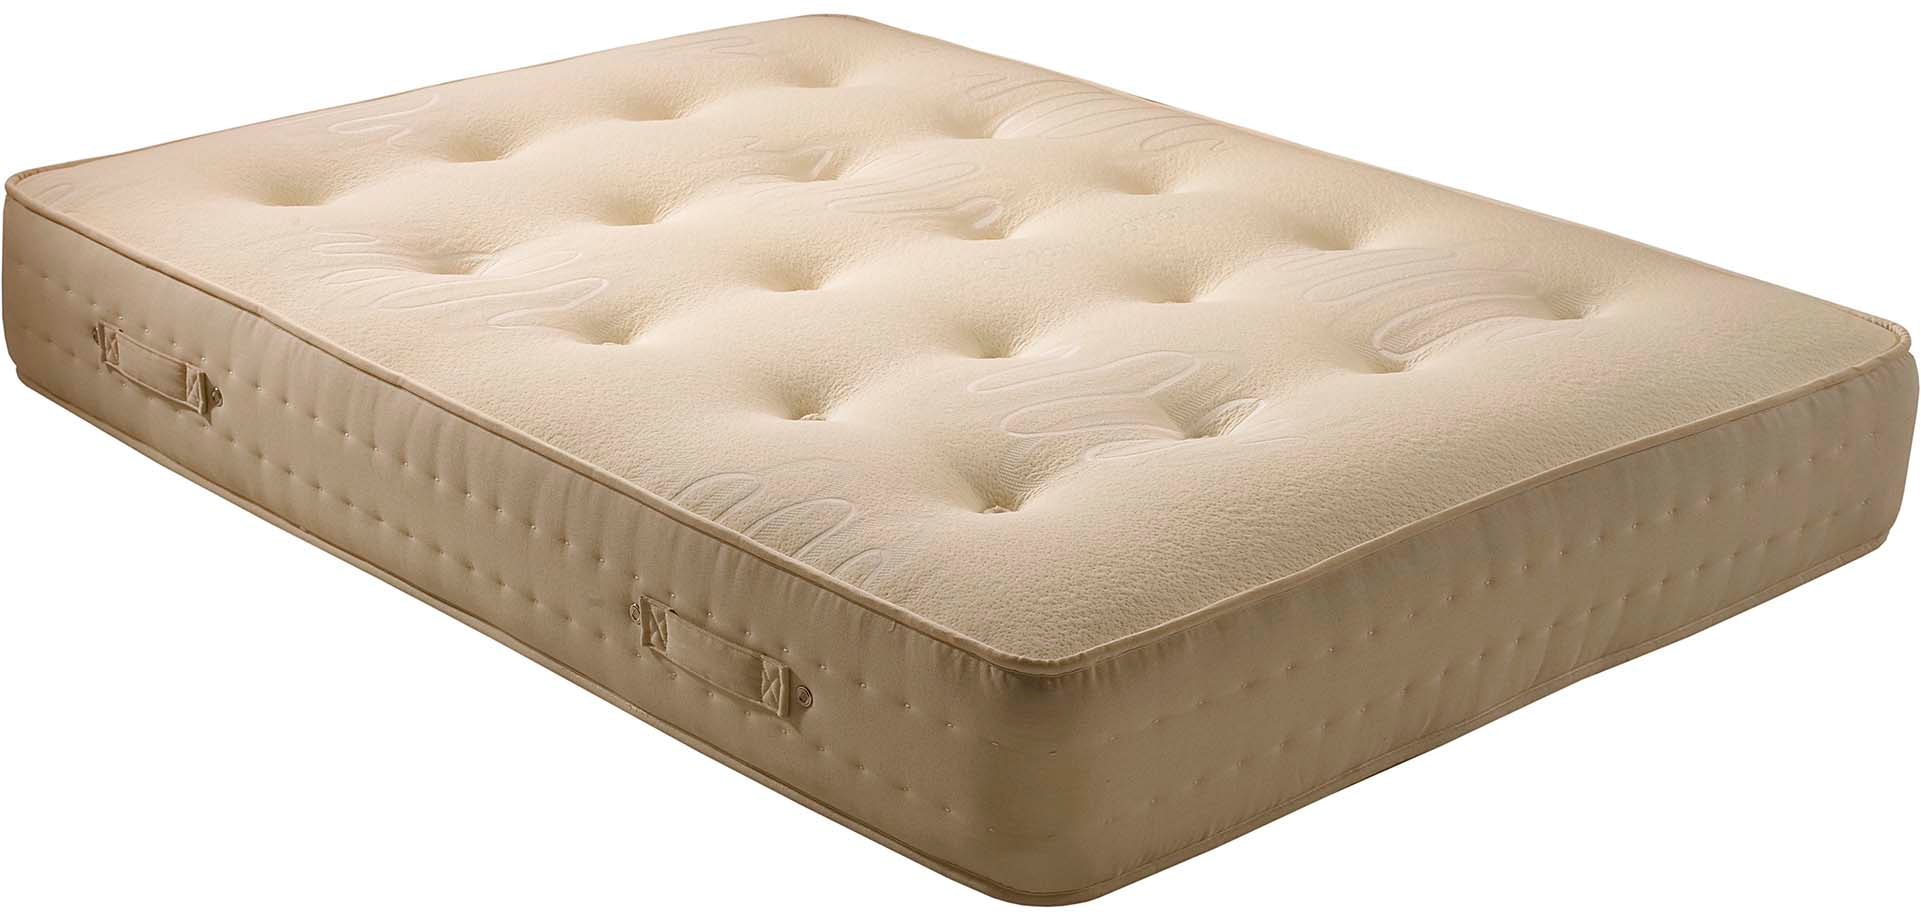 dynasty mattress